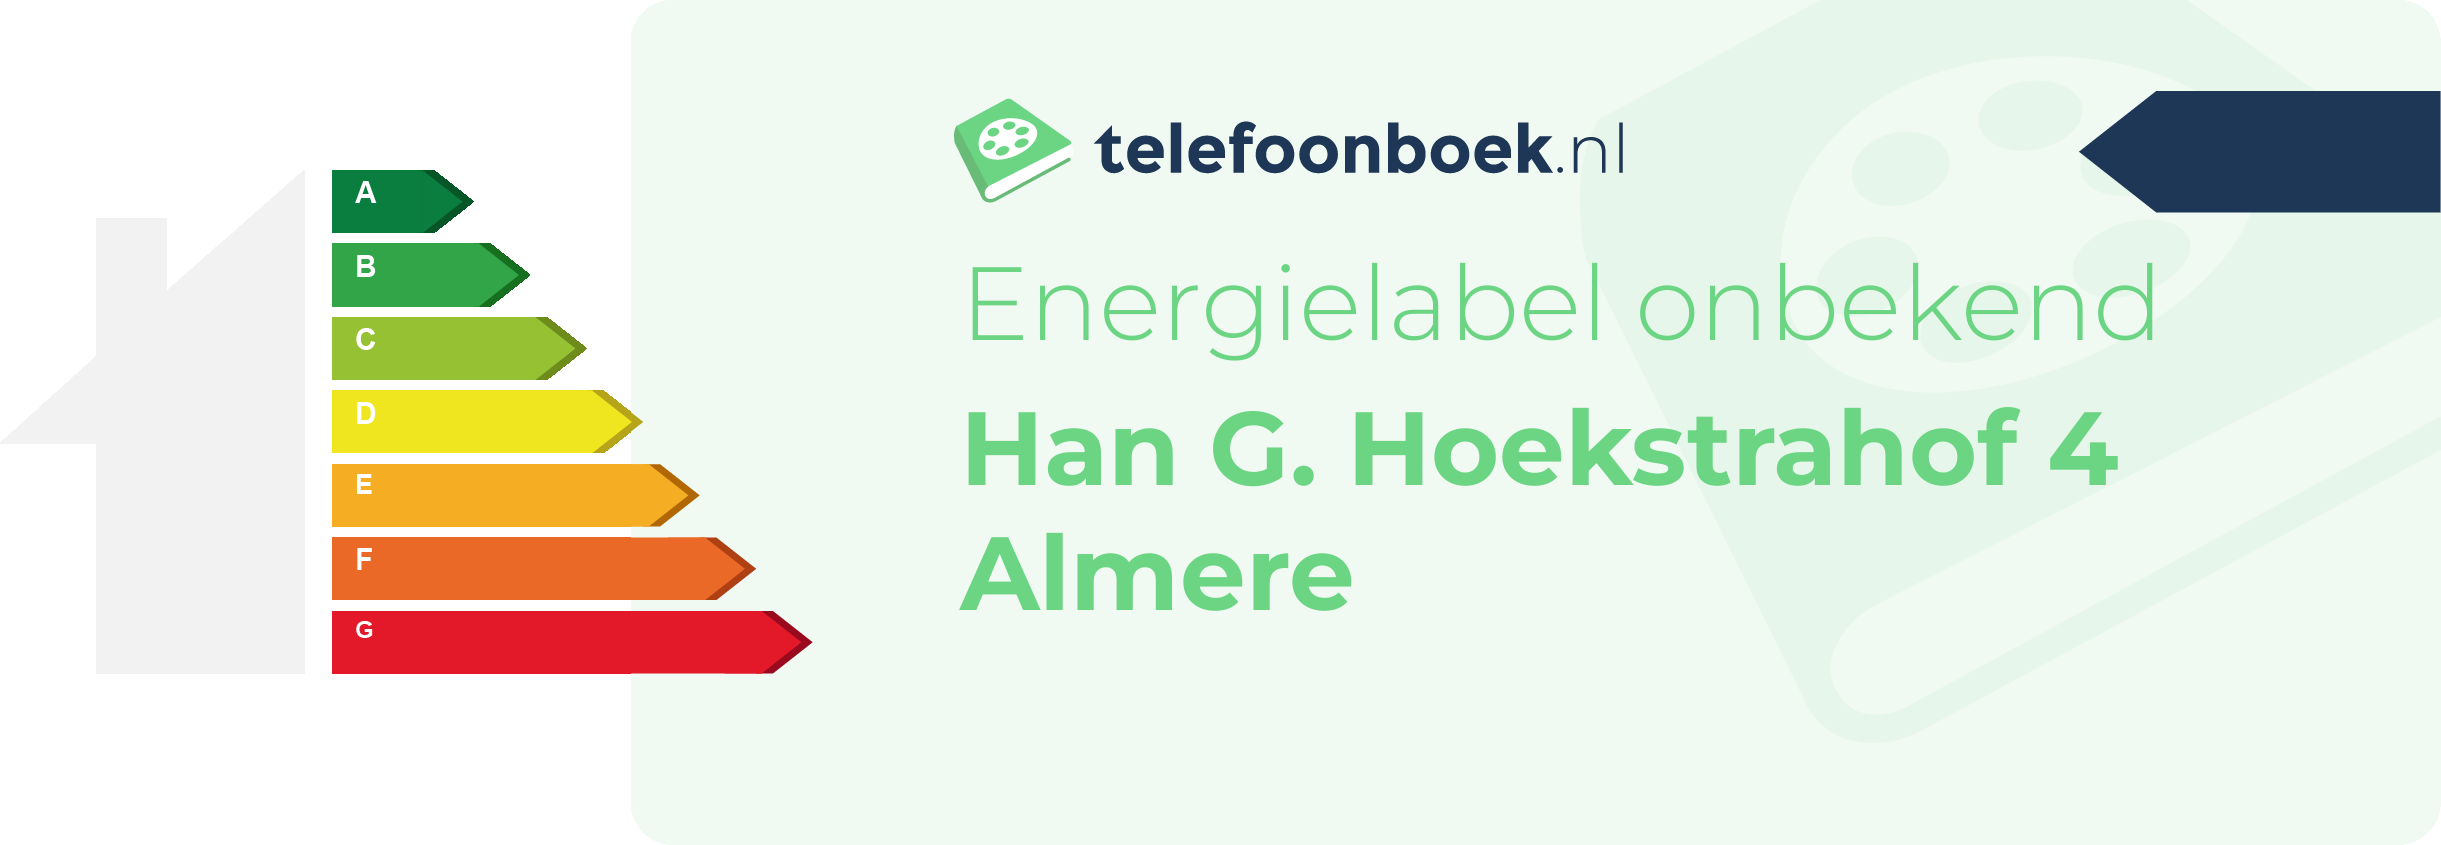 Energielabel Han G. Hoekstrahof 4 Almere